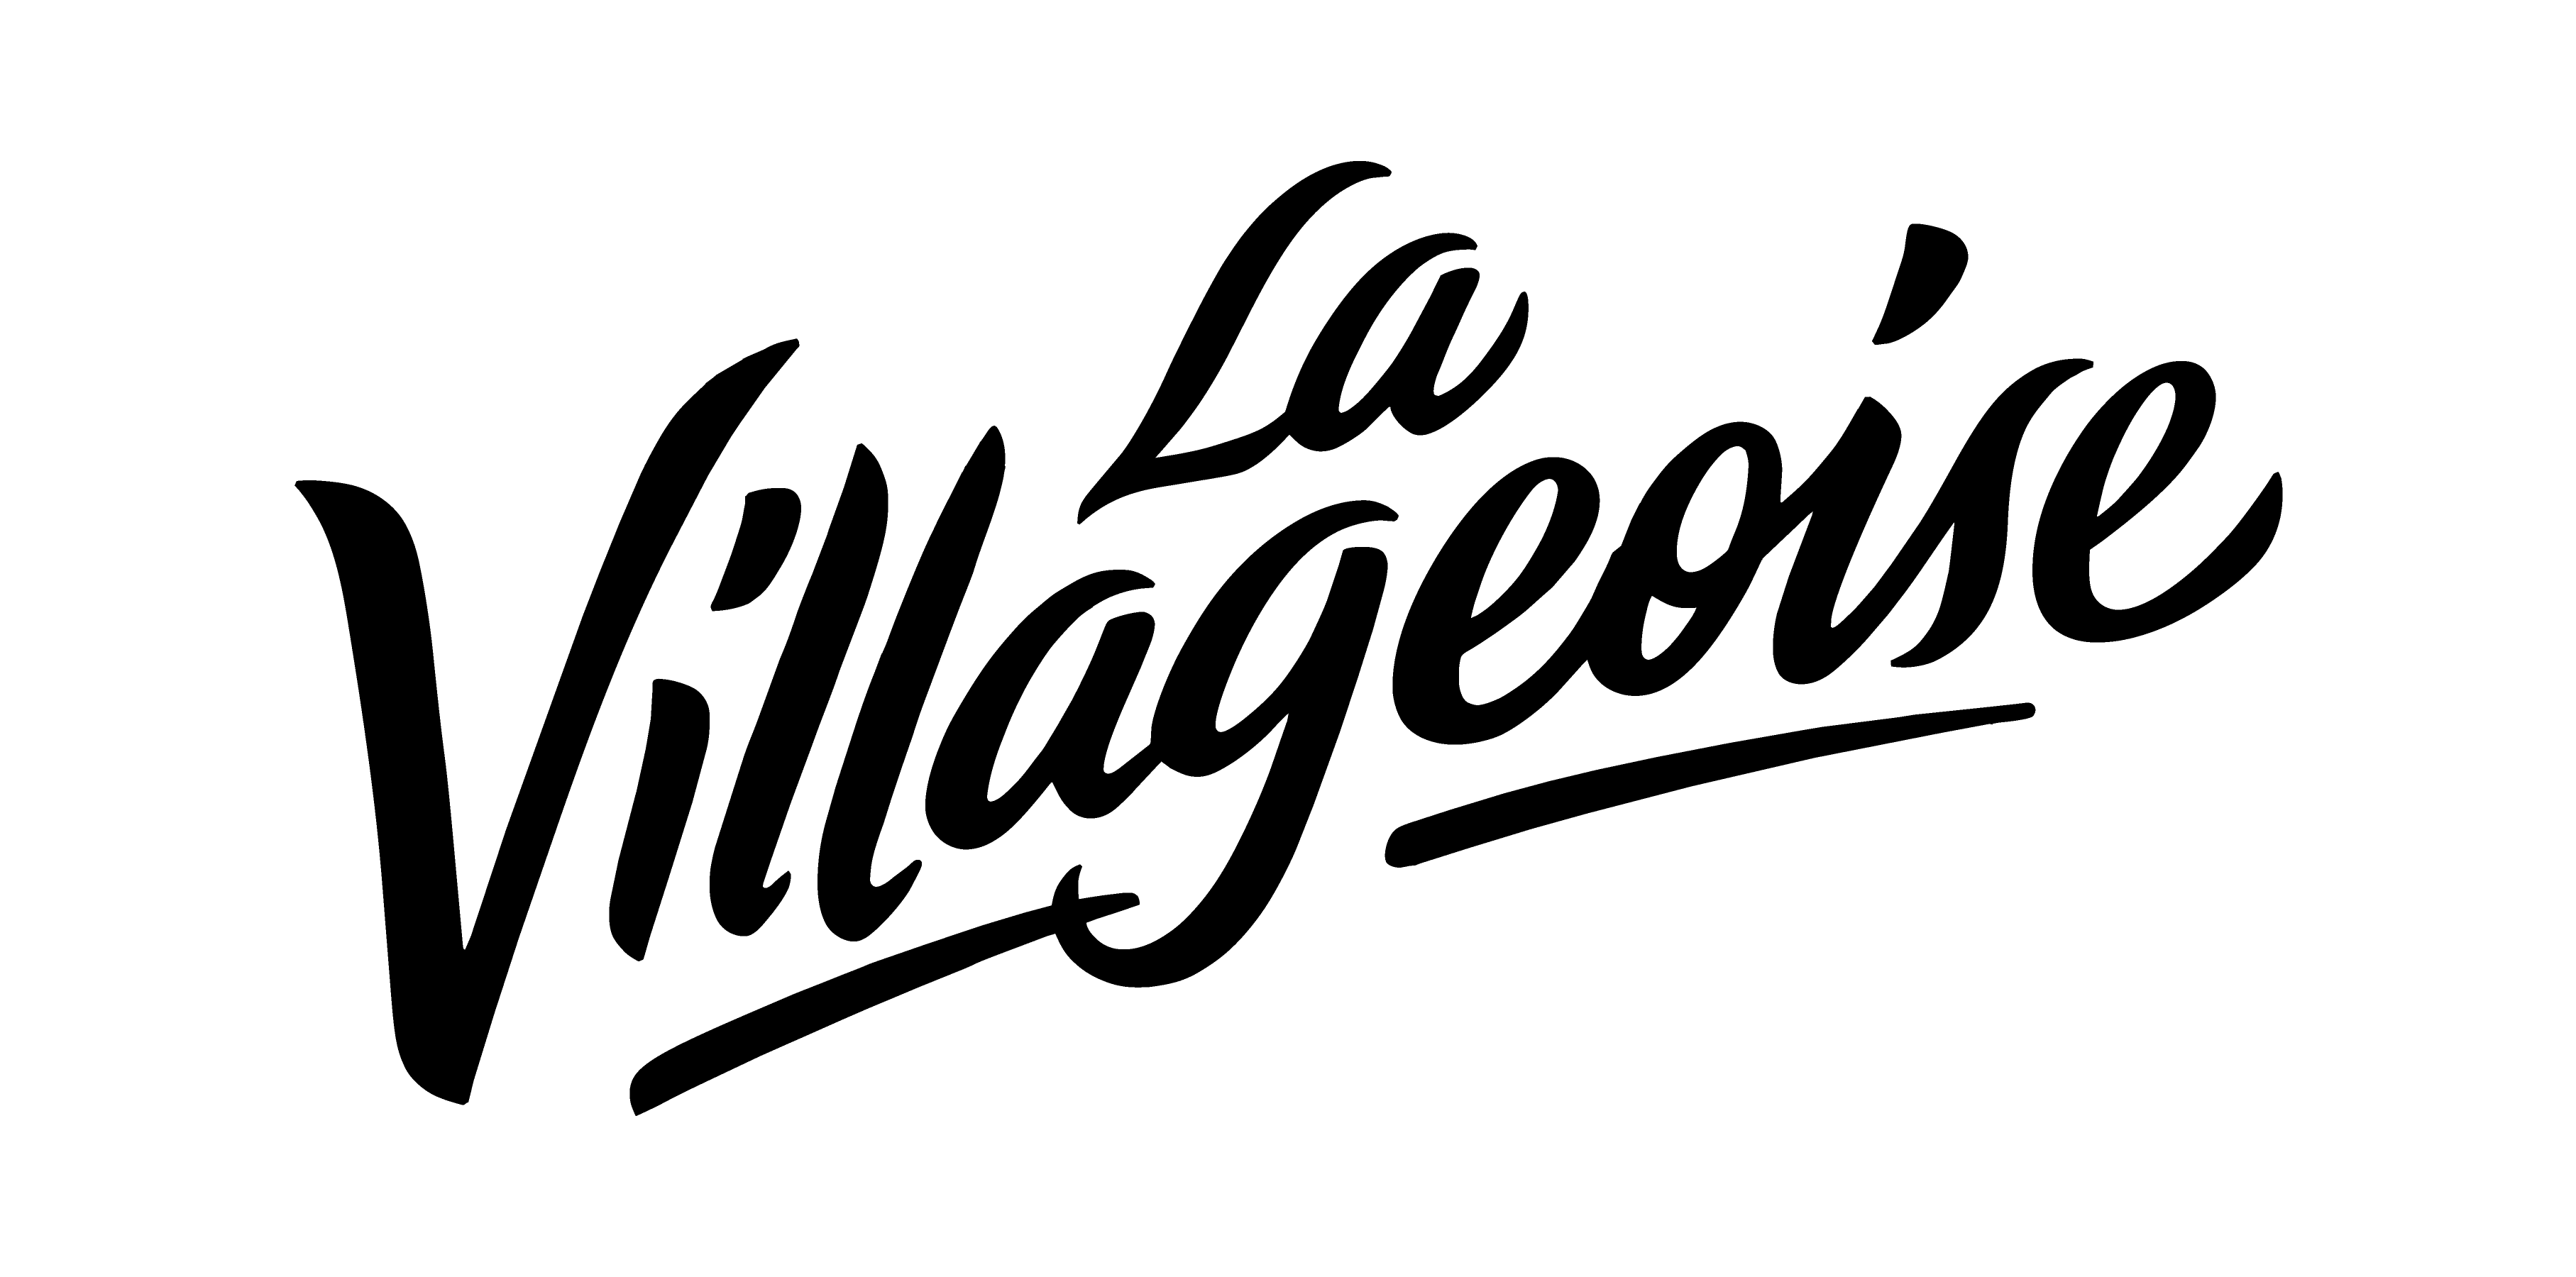 La Villageoise